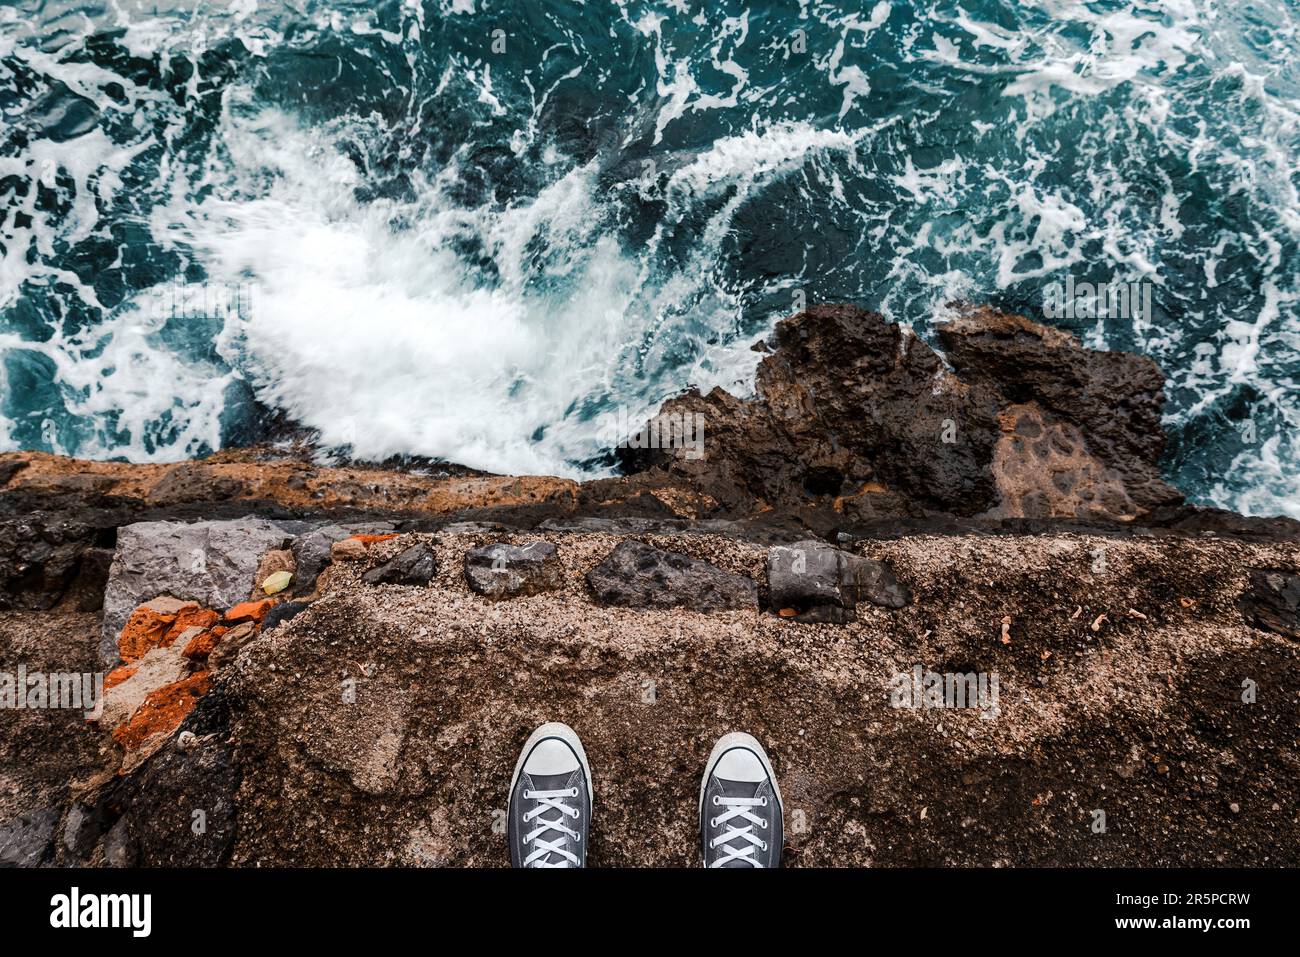 Suizidgedanken oder -Gedanken, junge Person, die an der Meeresklippe über dem kalten Wasser steht und Meeresschaum, nachdem Wellen an Felsen krachen, pov-Bild Stockfoto